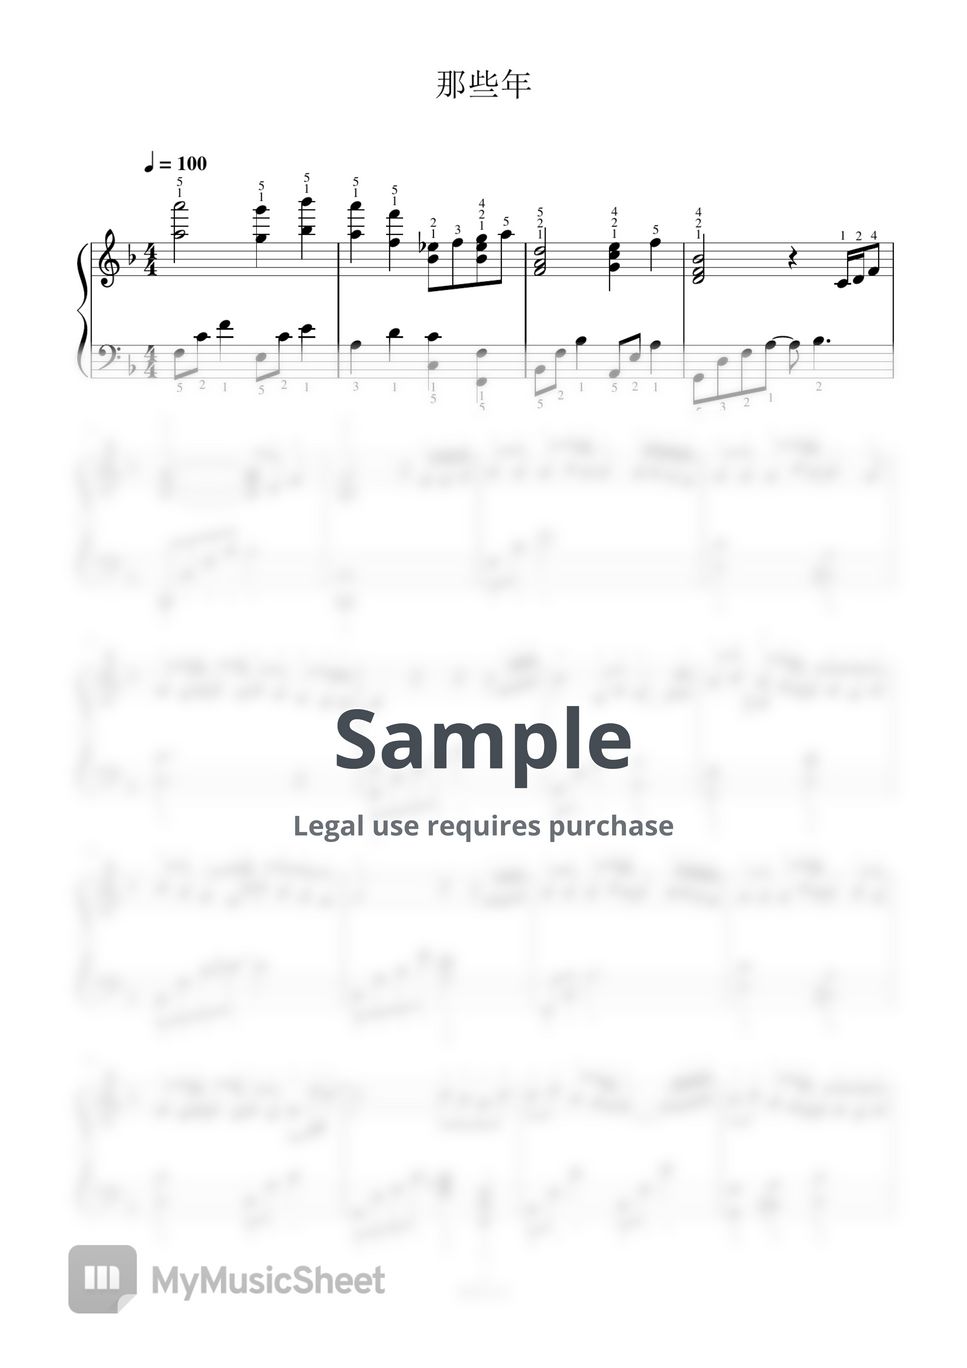 胡夏 - 那些年-全指法钢琴谱高清正版完整版 (Full Fingering Piano Score) by 紫韵音乐